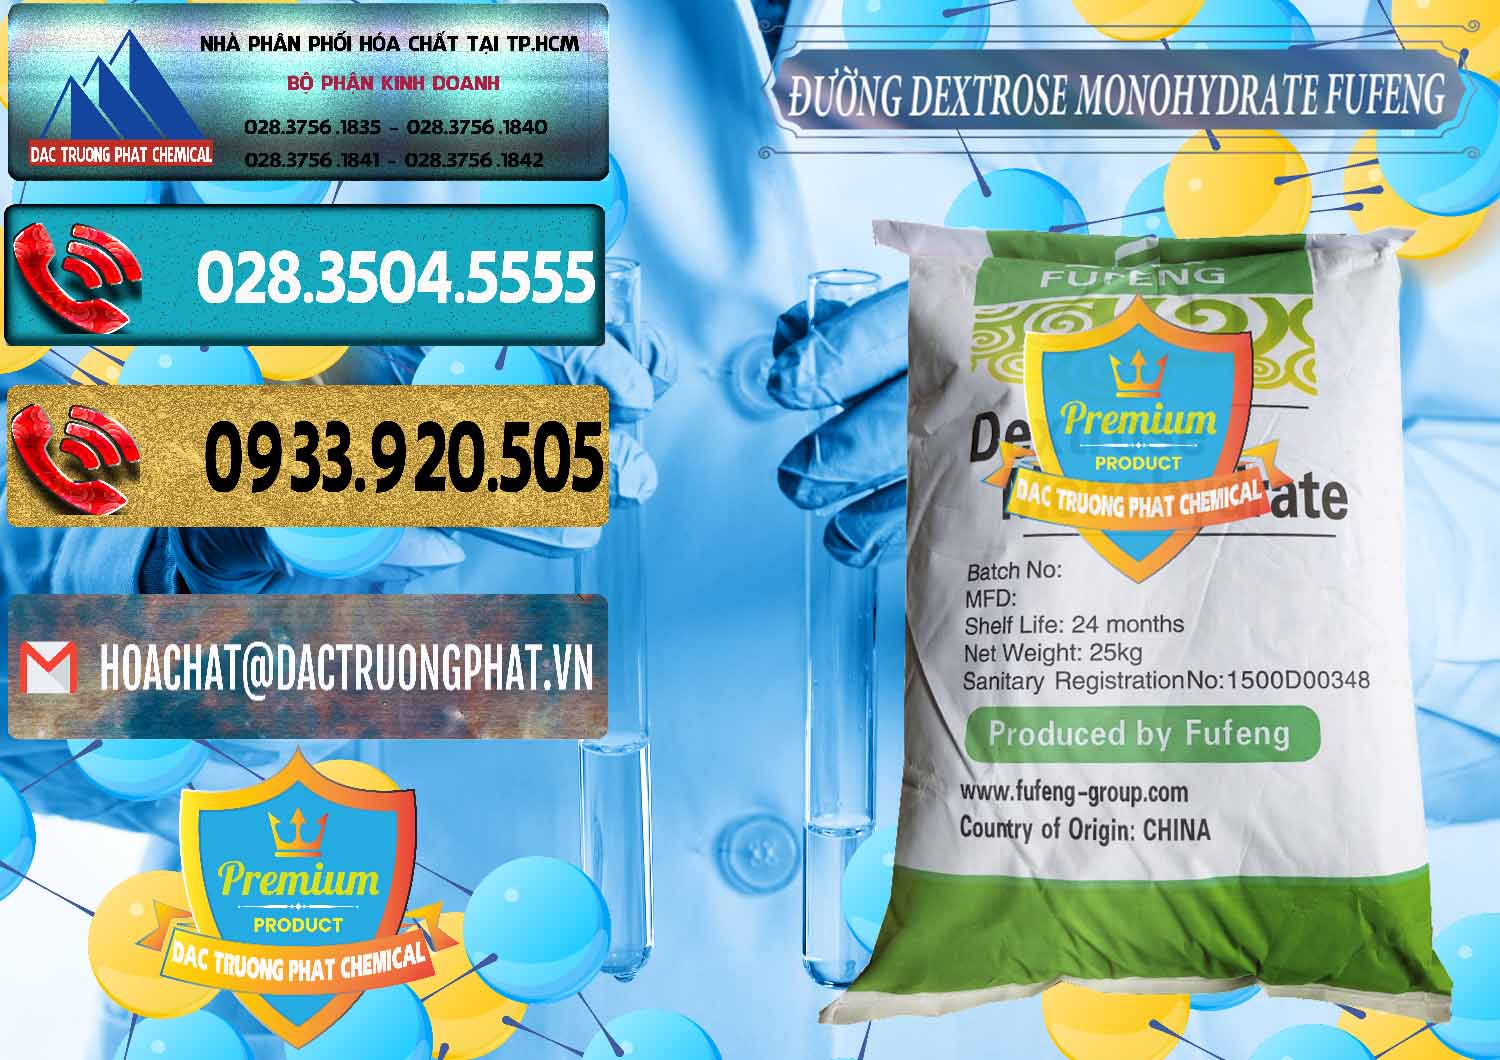 Cty kinh doanh & bán Đường Dextrose Monohydrate Food Grade Fufeng Trung Quốc China - 0223 - Đơn vị chuyên cung ứng & phân phối hóa chất tại TP.HCM - hoachatdetnhuom.com